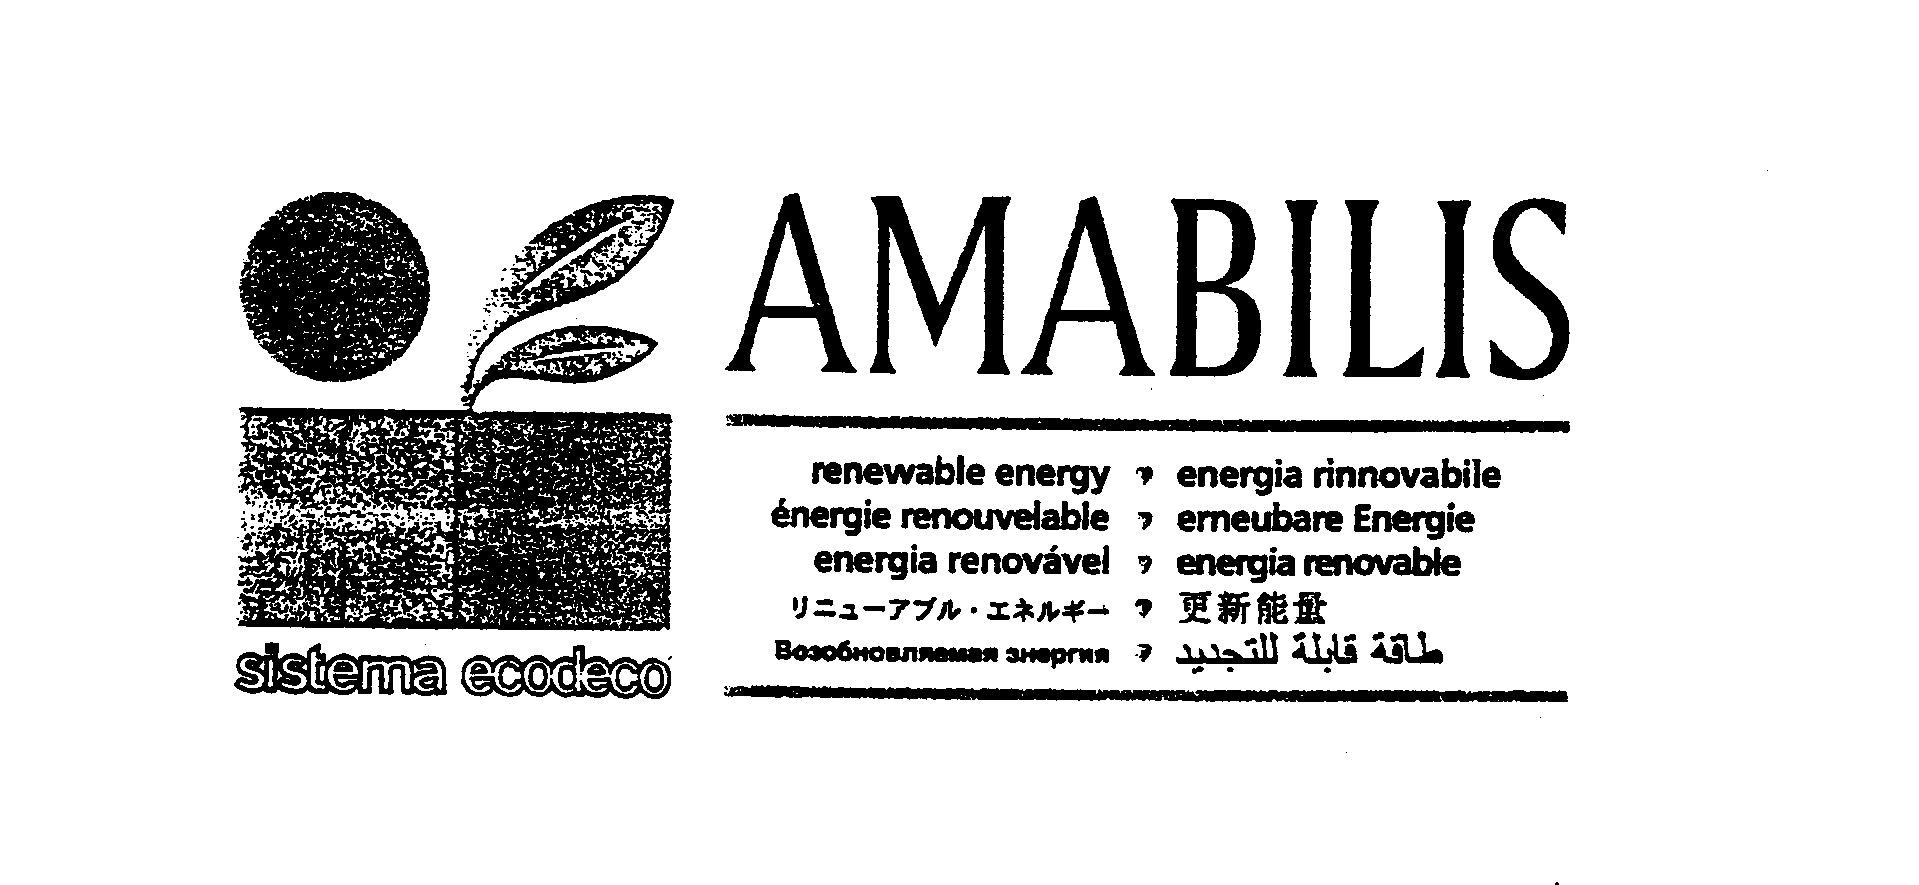  AMABILIS RENEWABLE ENERGY